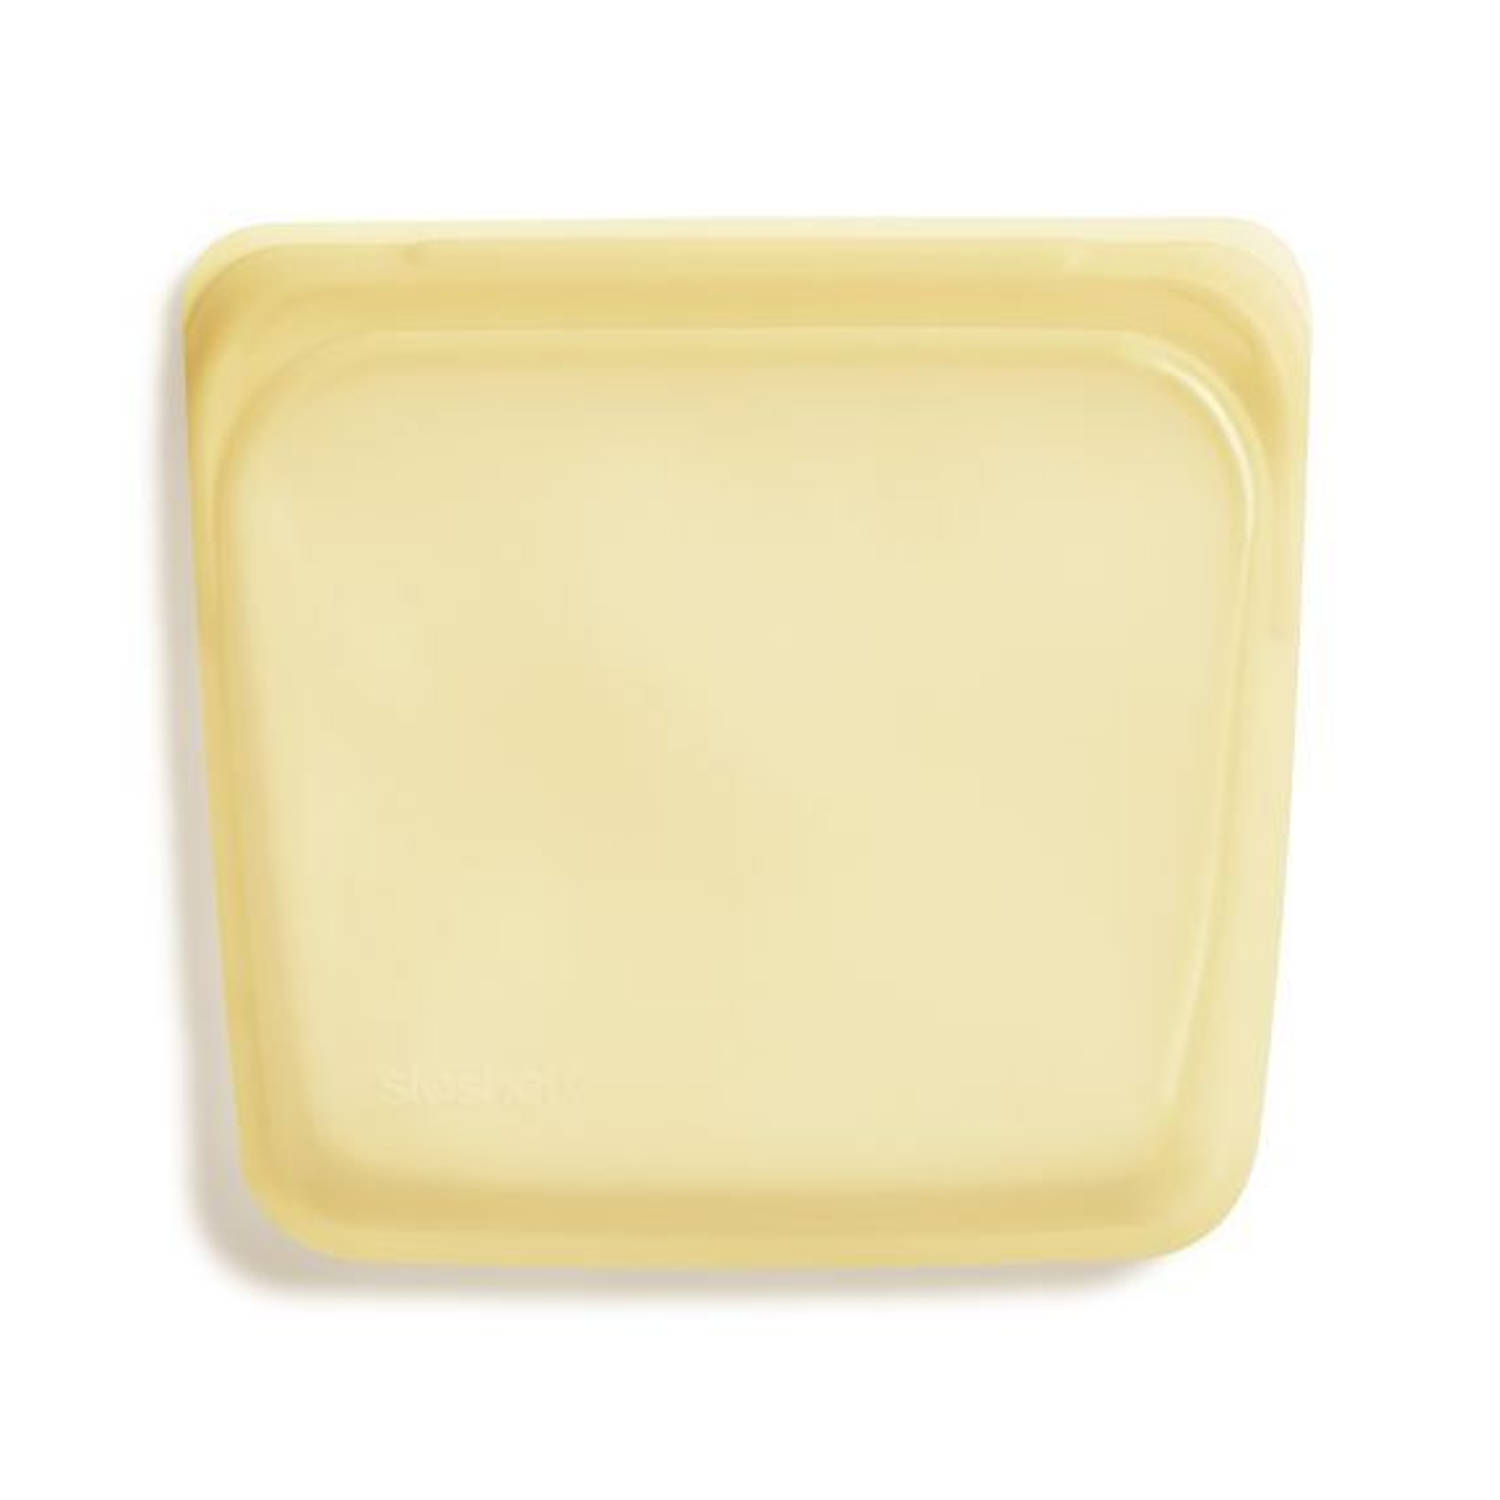 Stasher bag Sandwich - Vershoudzak - Hersluitbaar en Luchtdicht - 19x18cm - geel